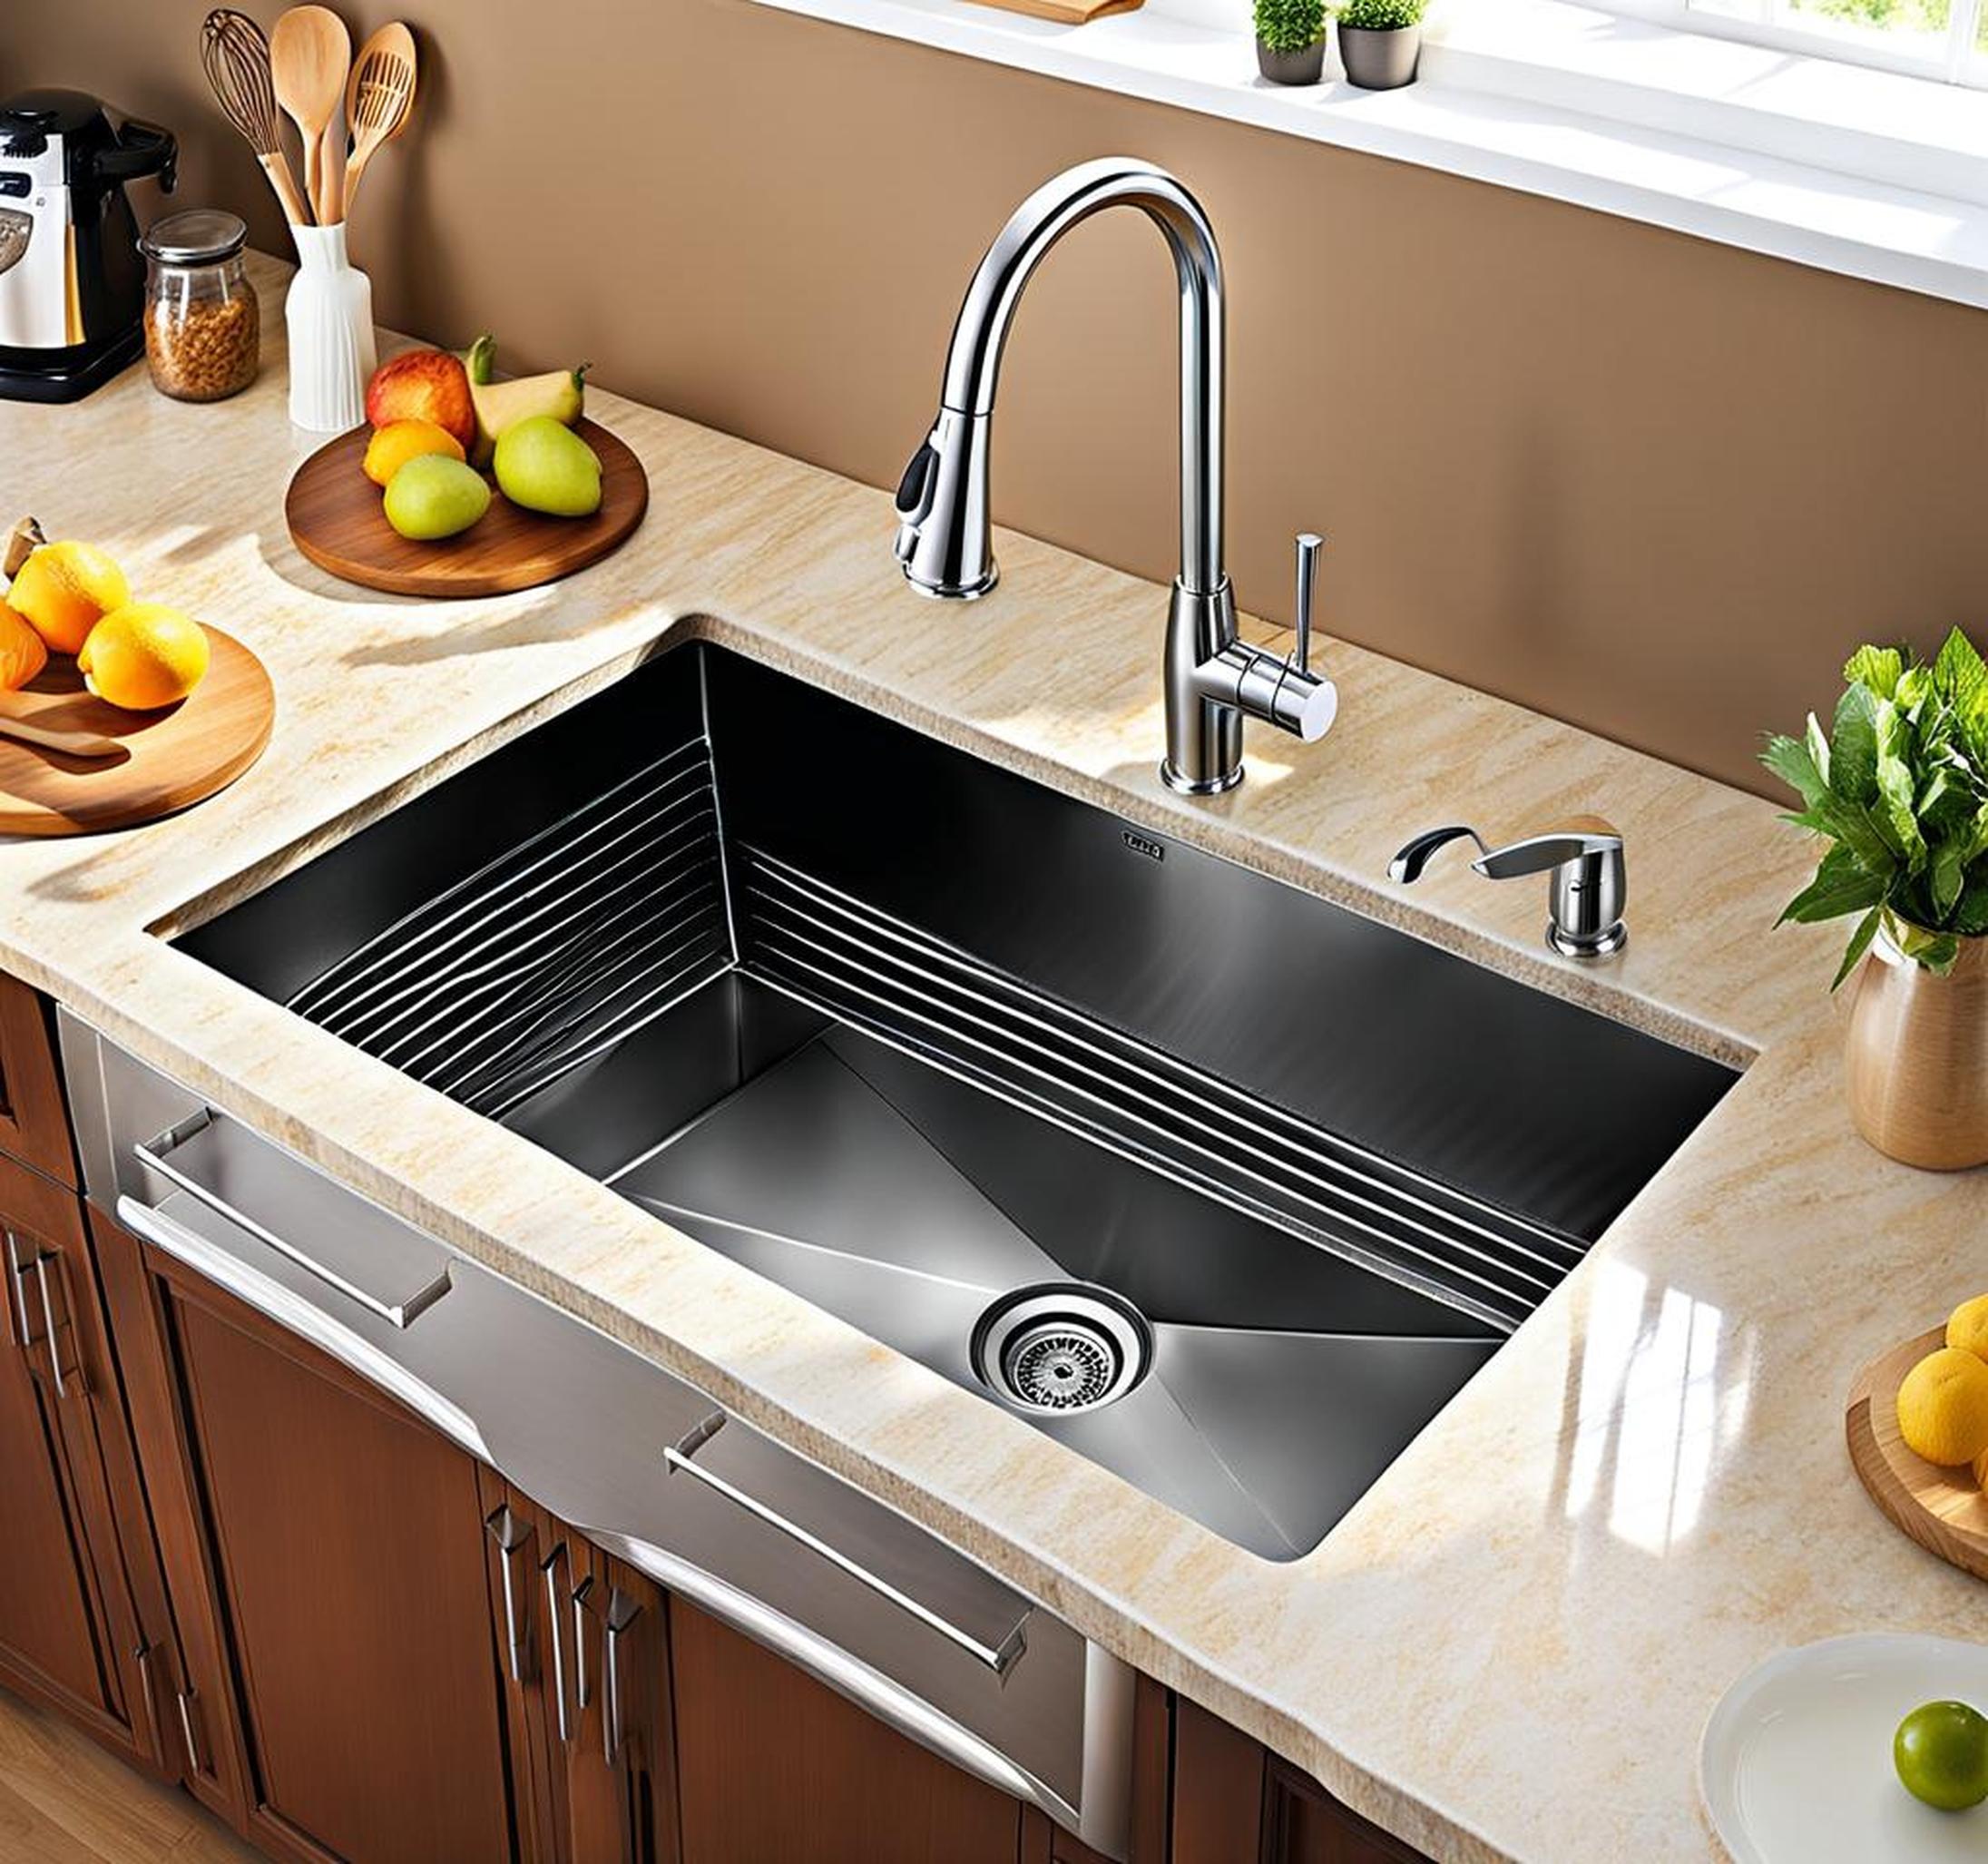 kitchen sink splash guard ideas